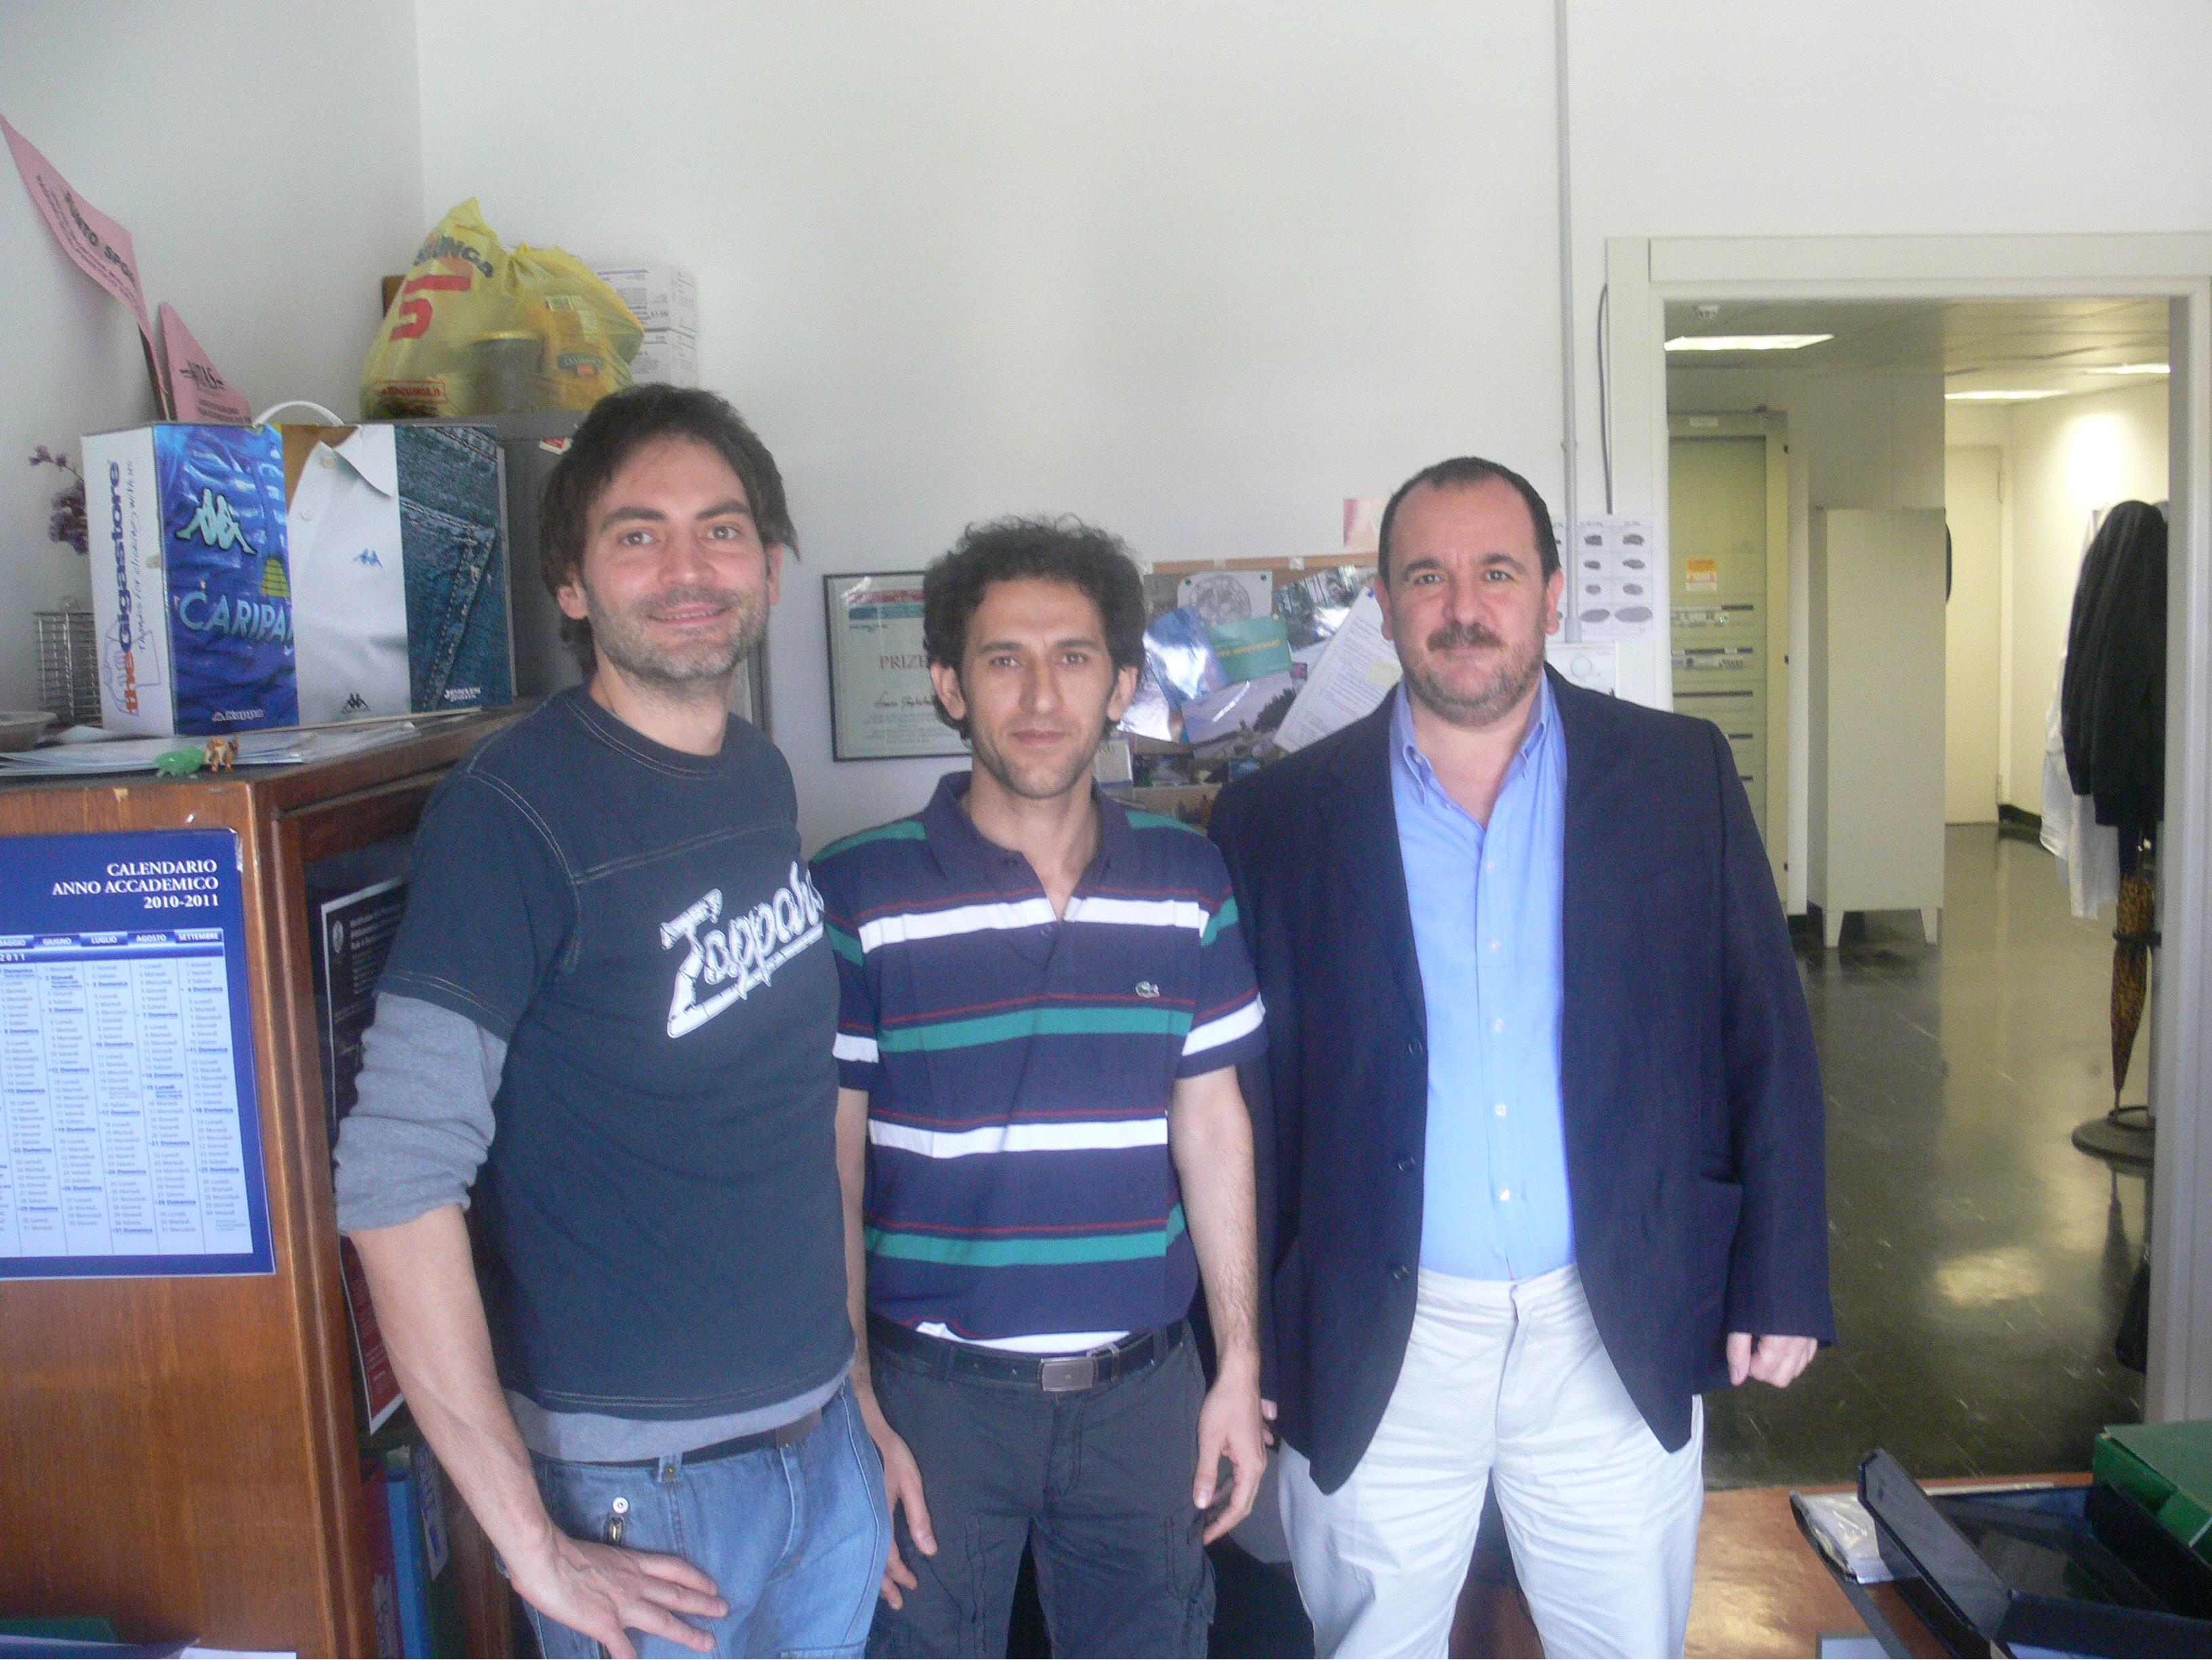 دکتر آشنگرف، پروفسور مولیناری و دکتر رزی، دانشگاه میلان 2010